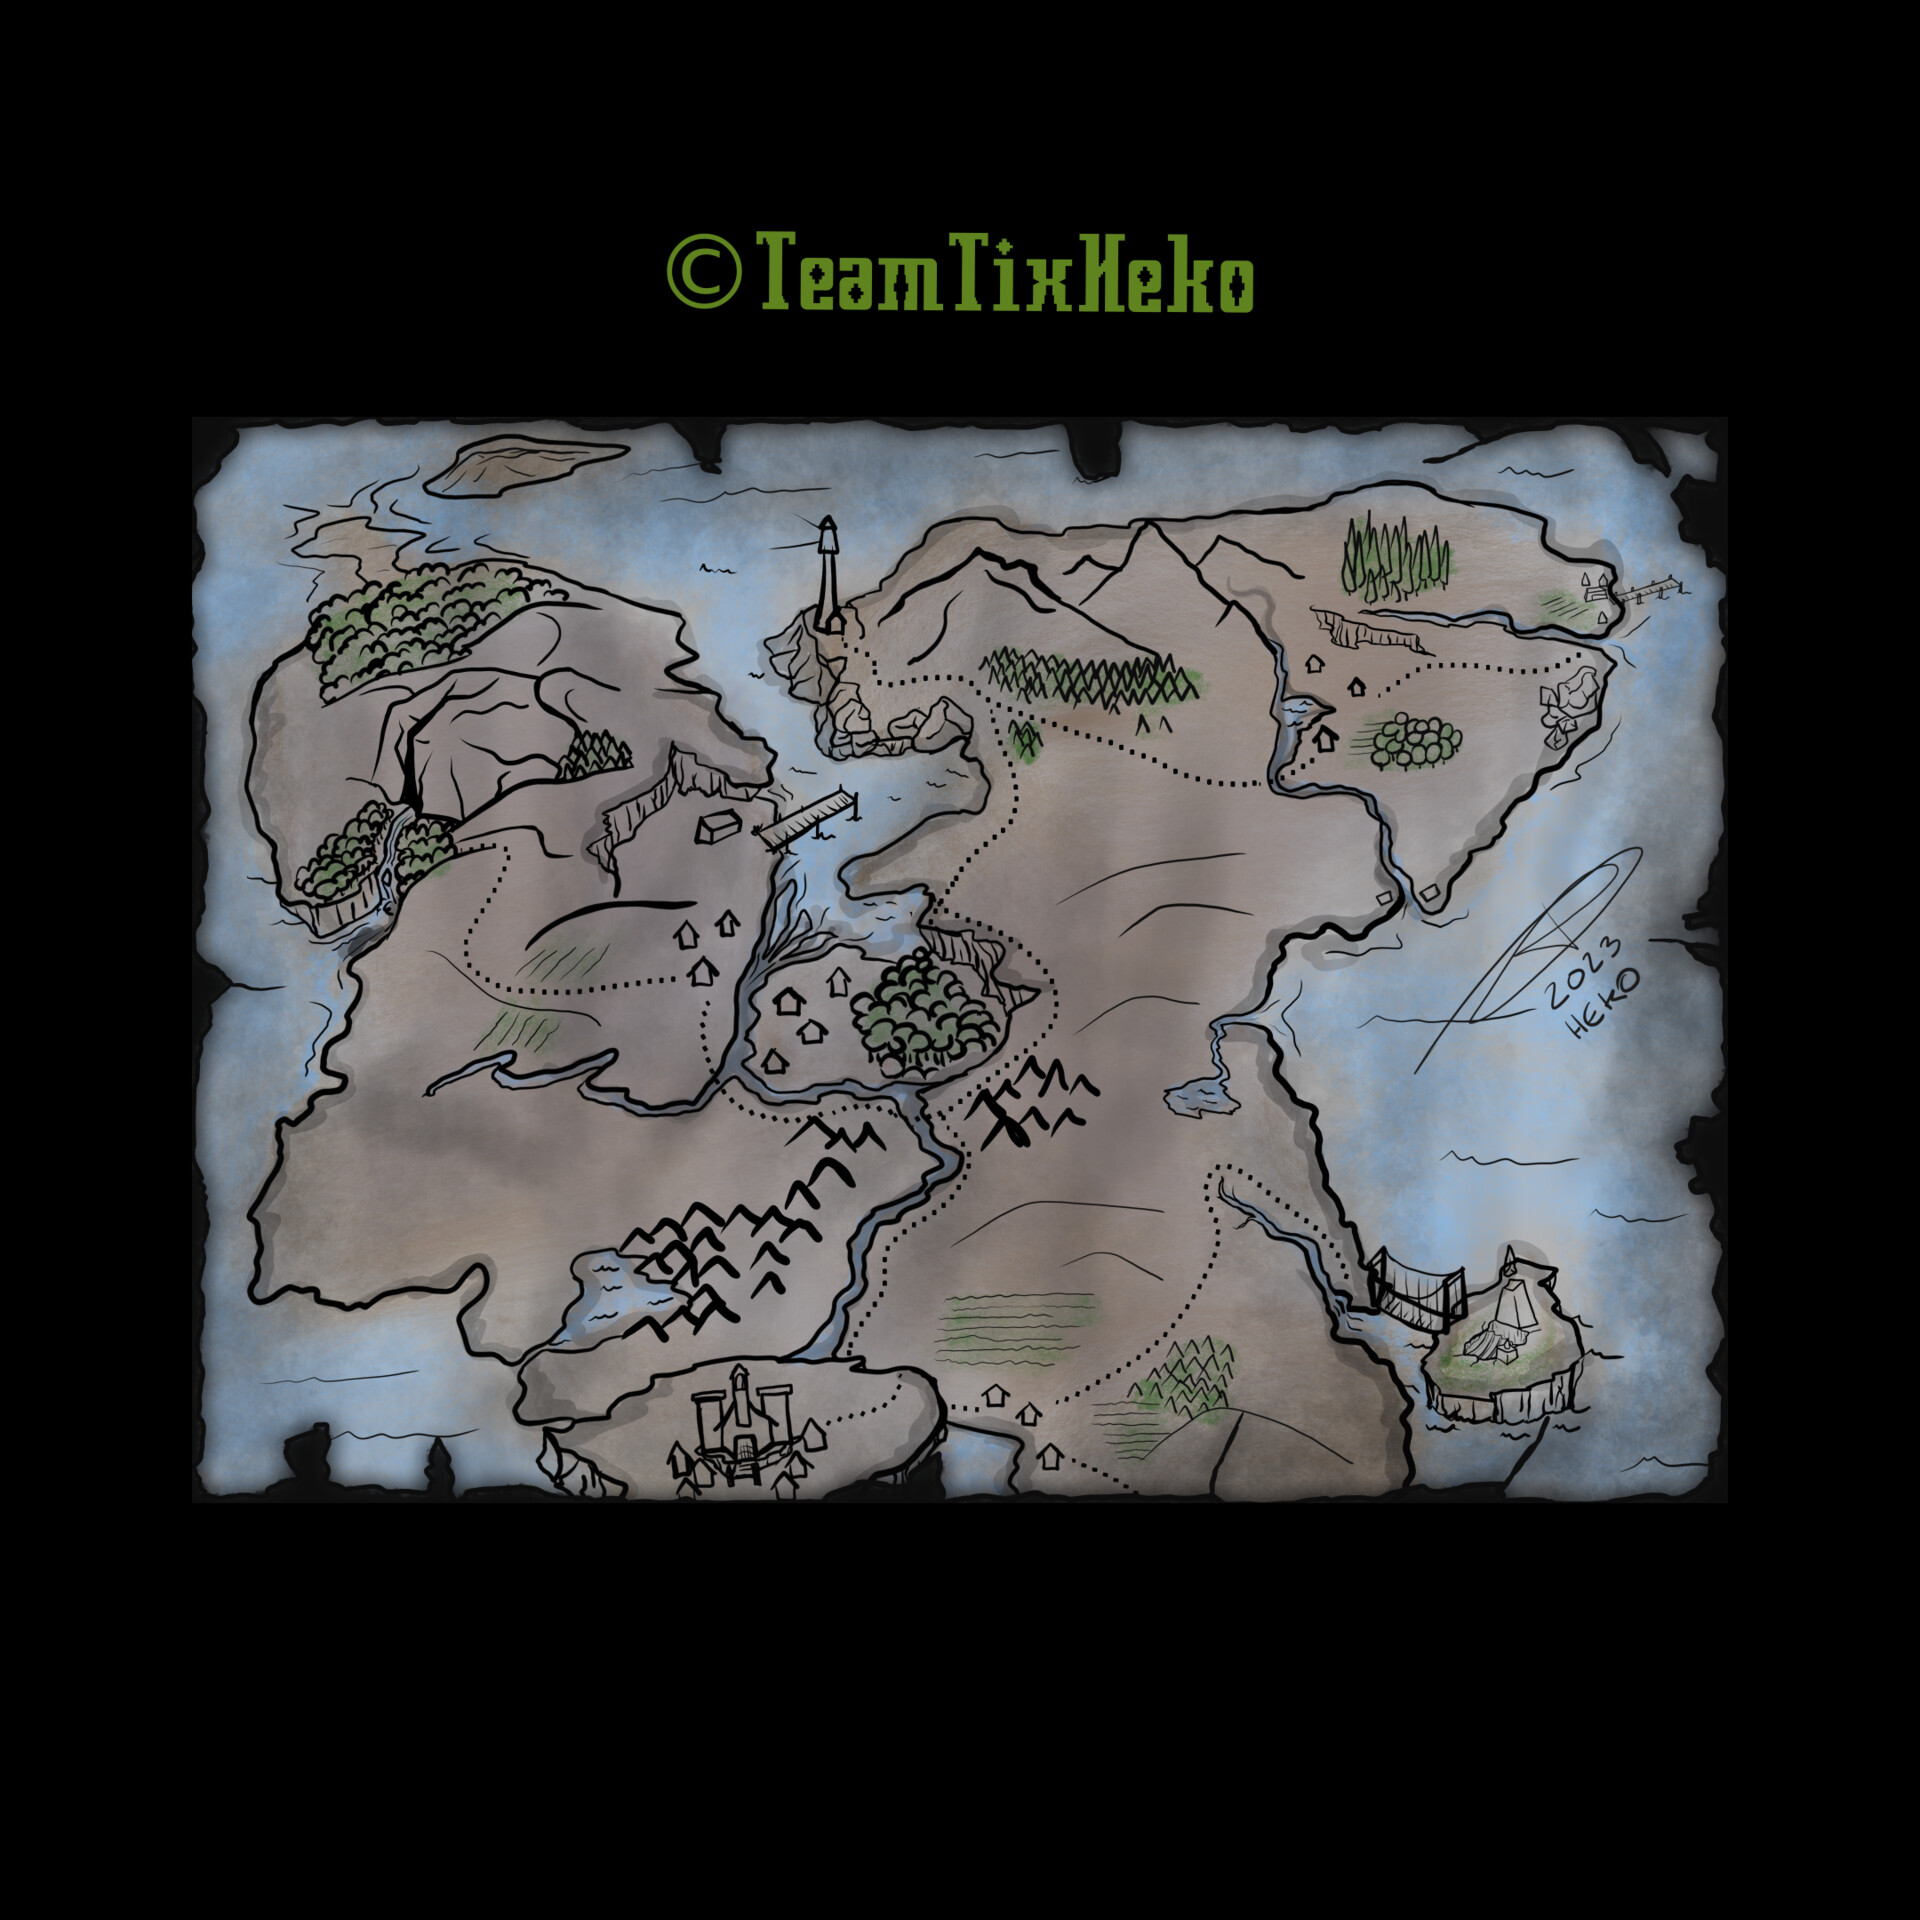 Teamtixheko Adventure Map Heko ?1678650460